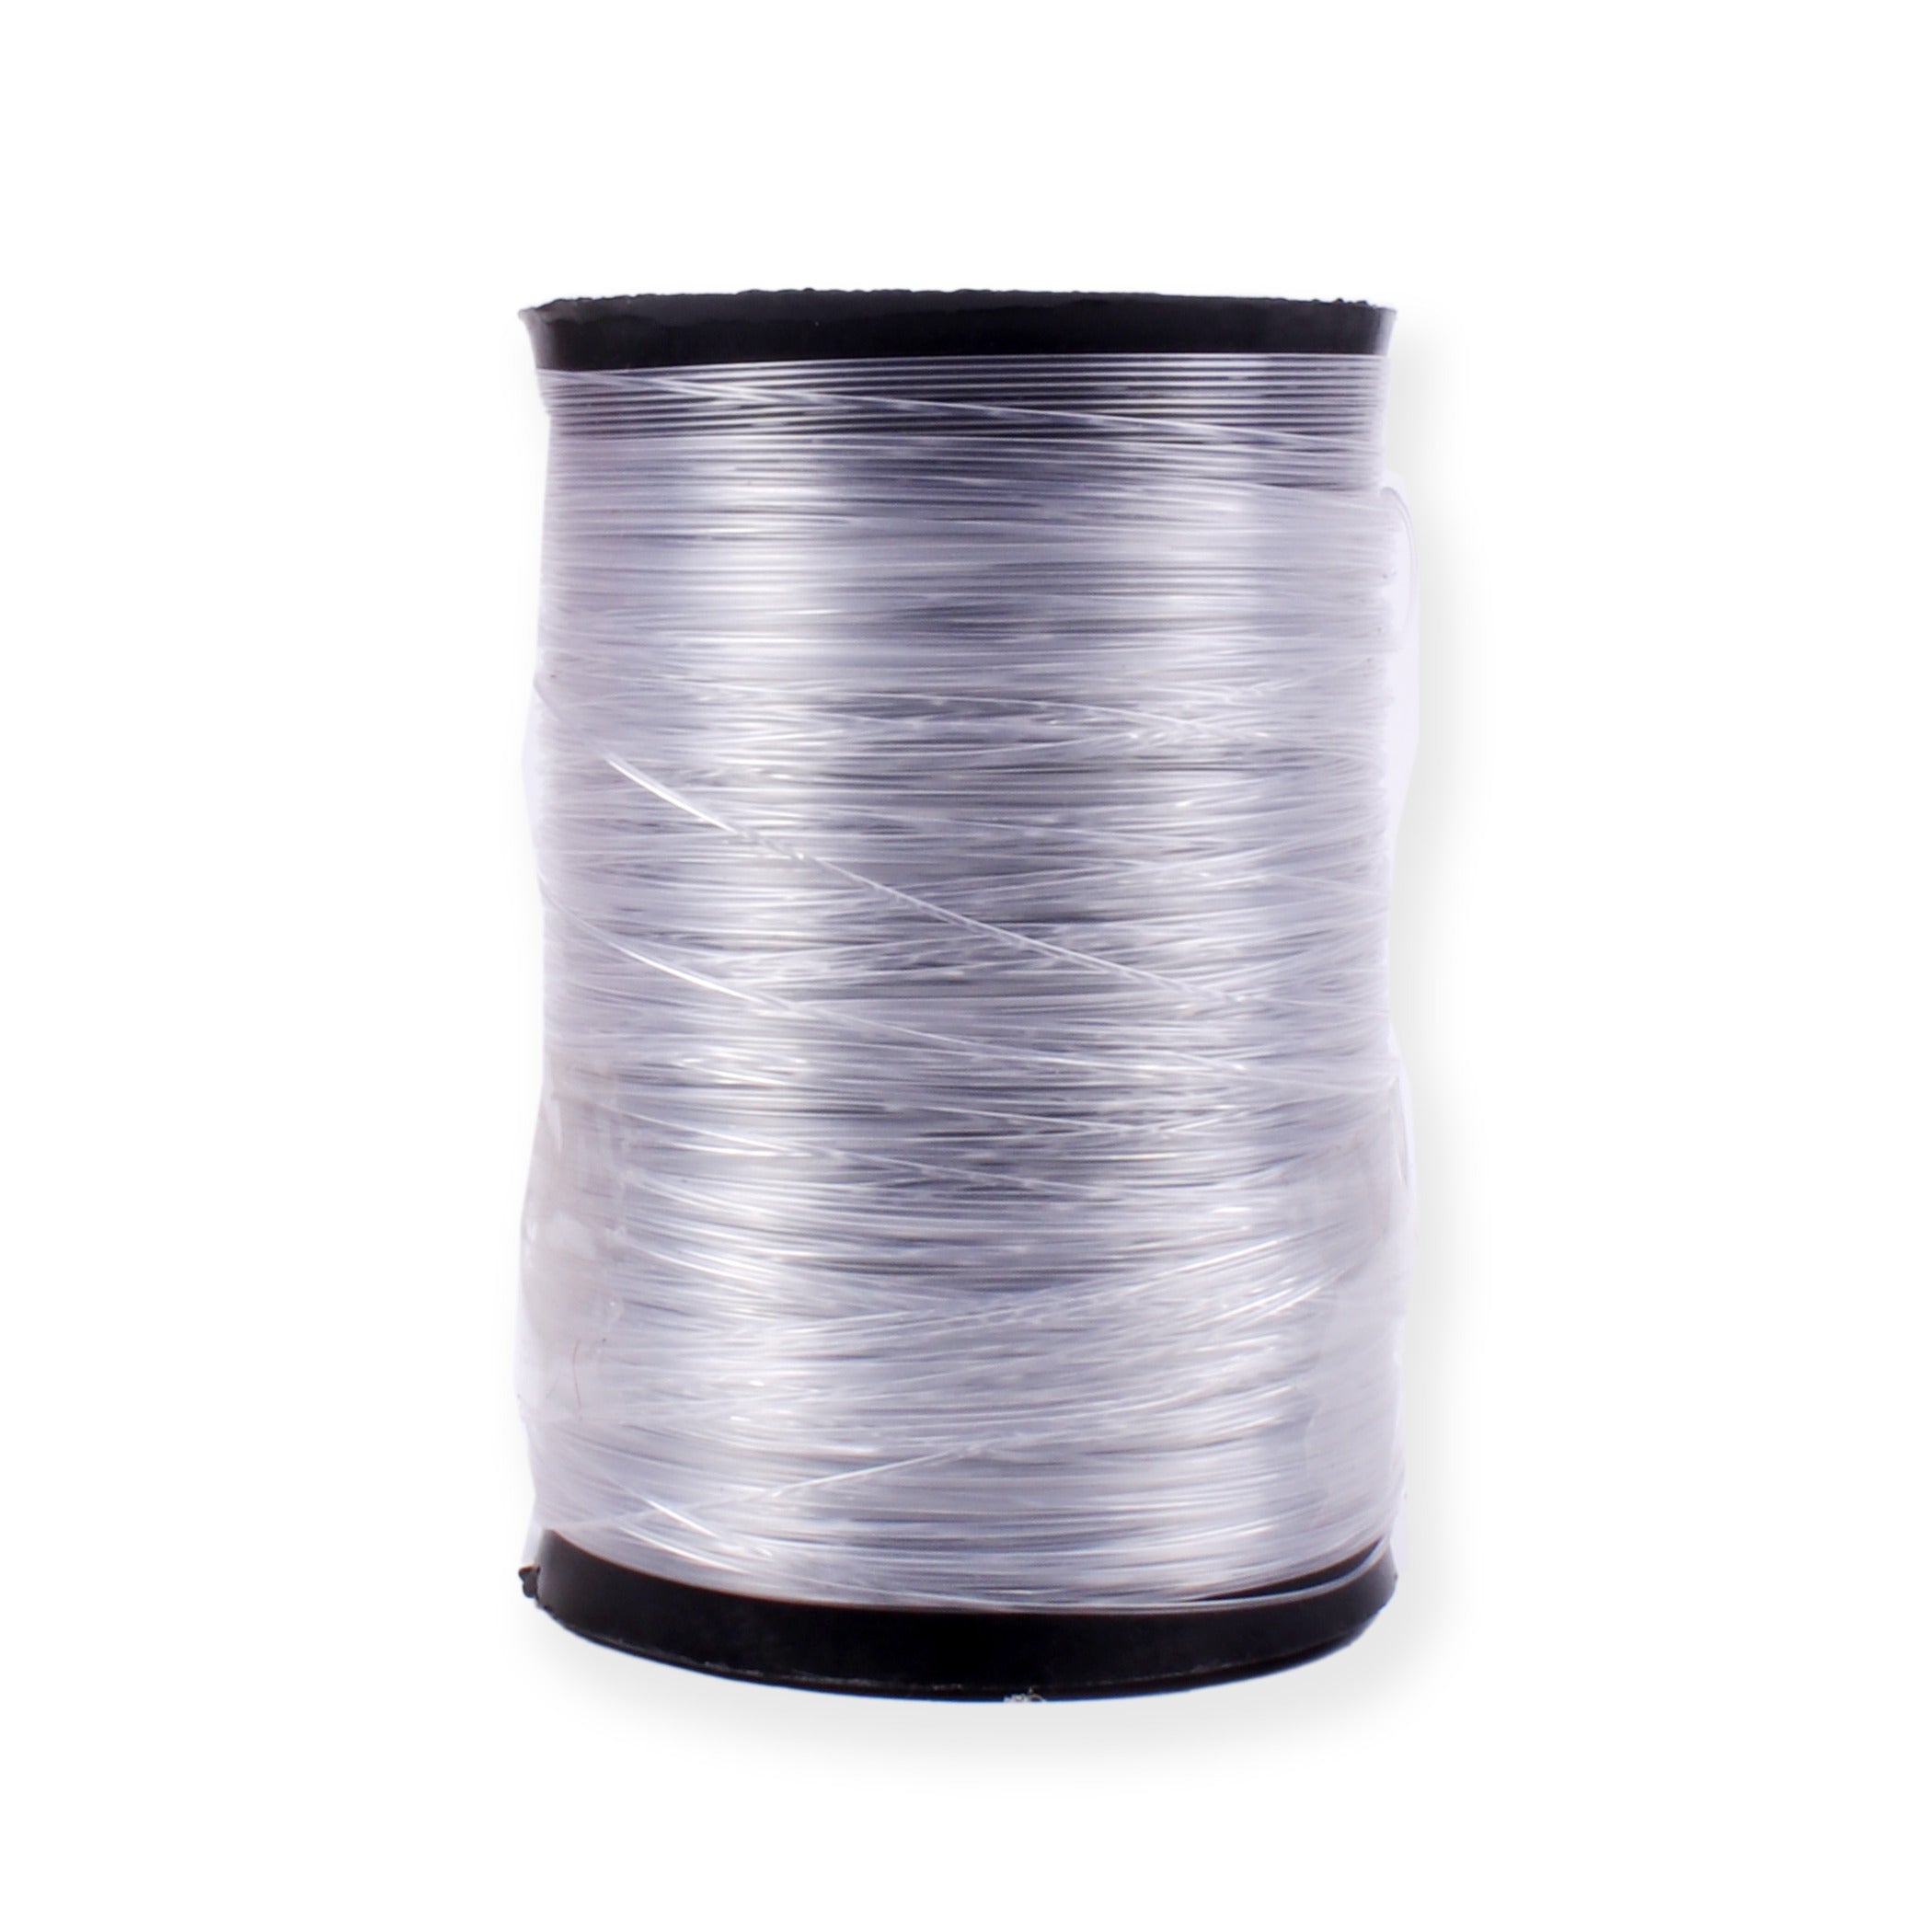 Filament Wire Thin 50mtr